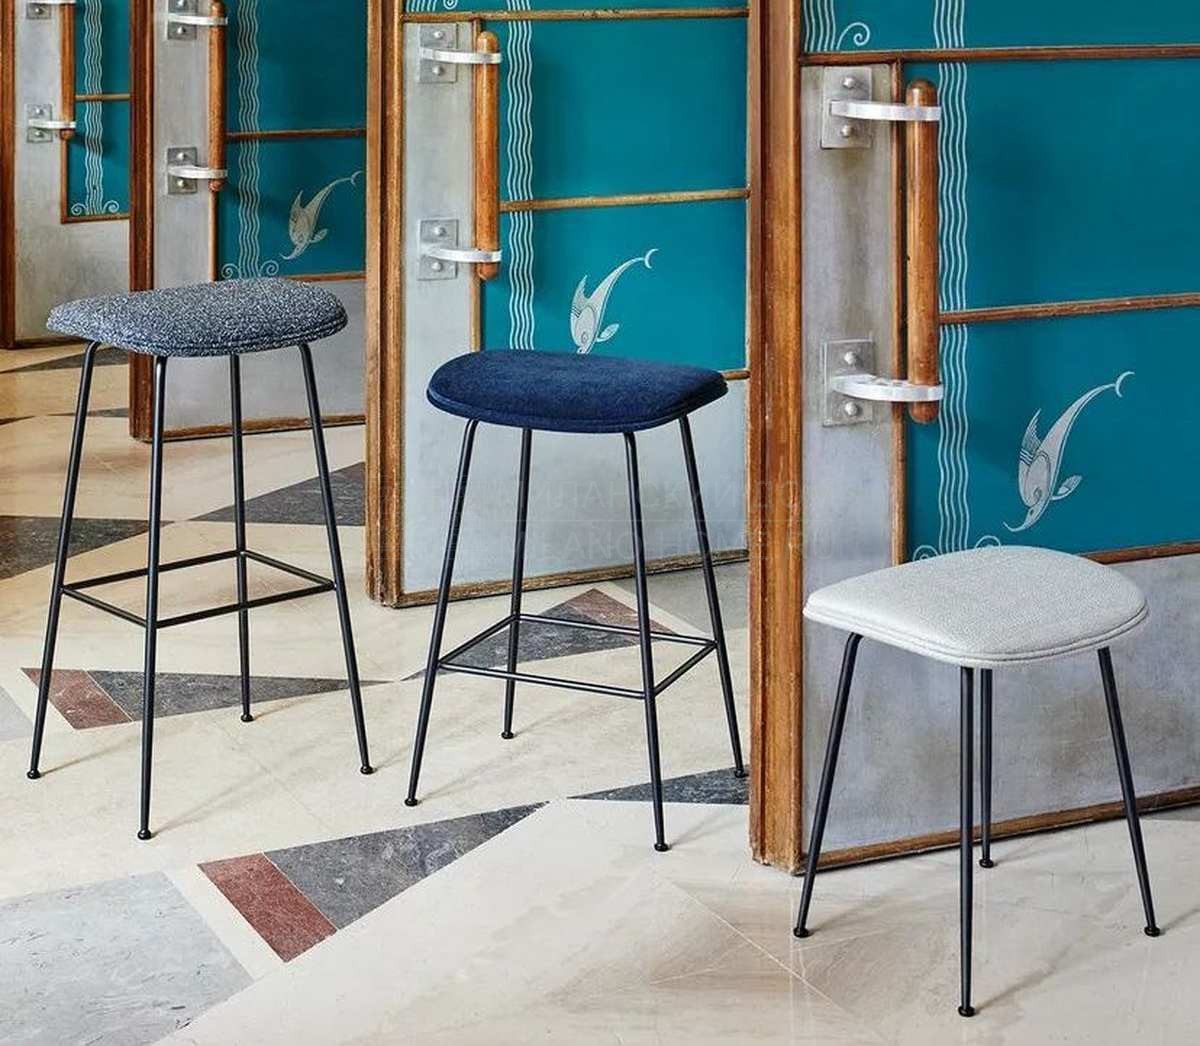 Стул Beetle stool upholstered из Дании фабрики GUBI